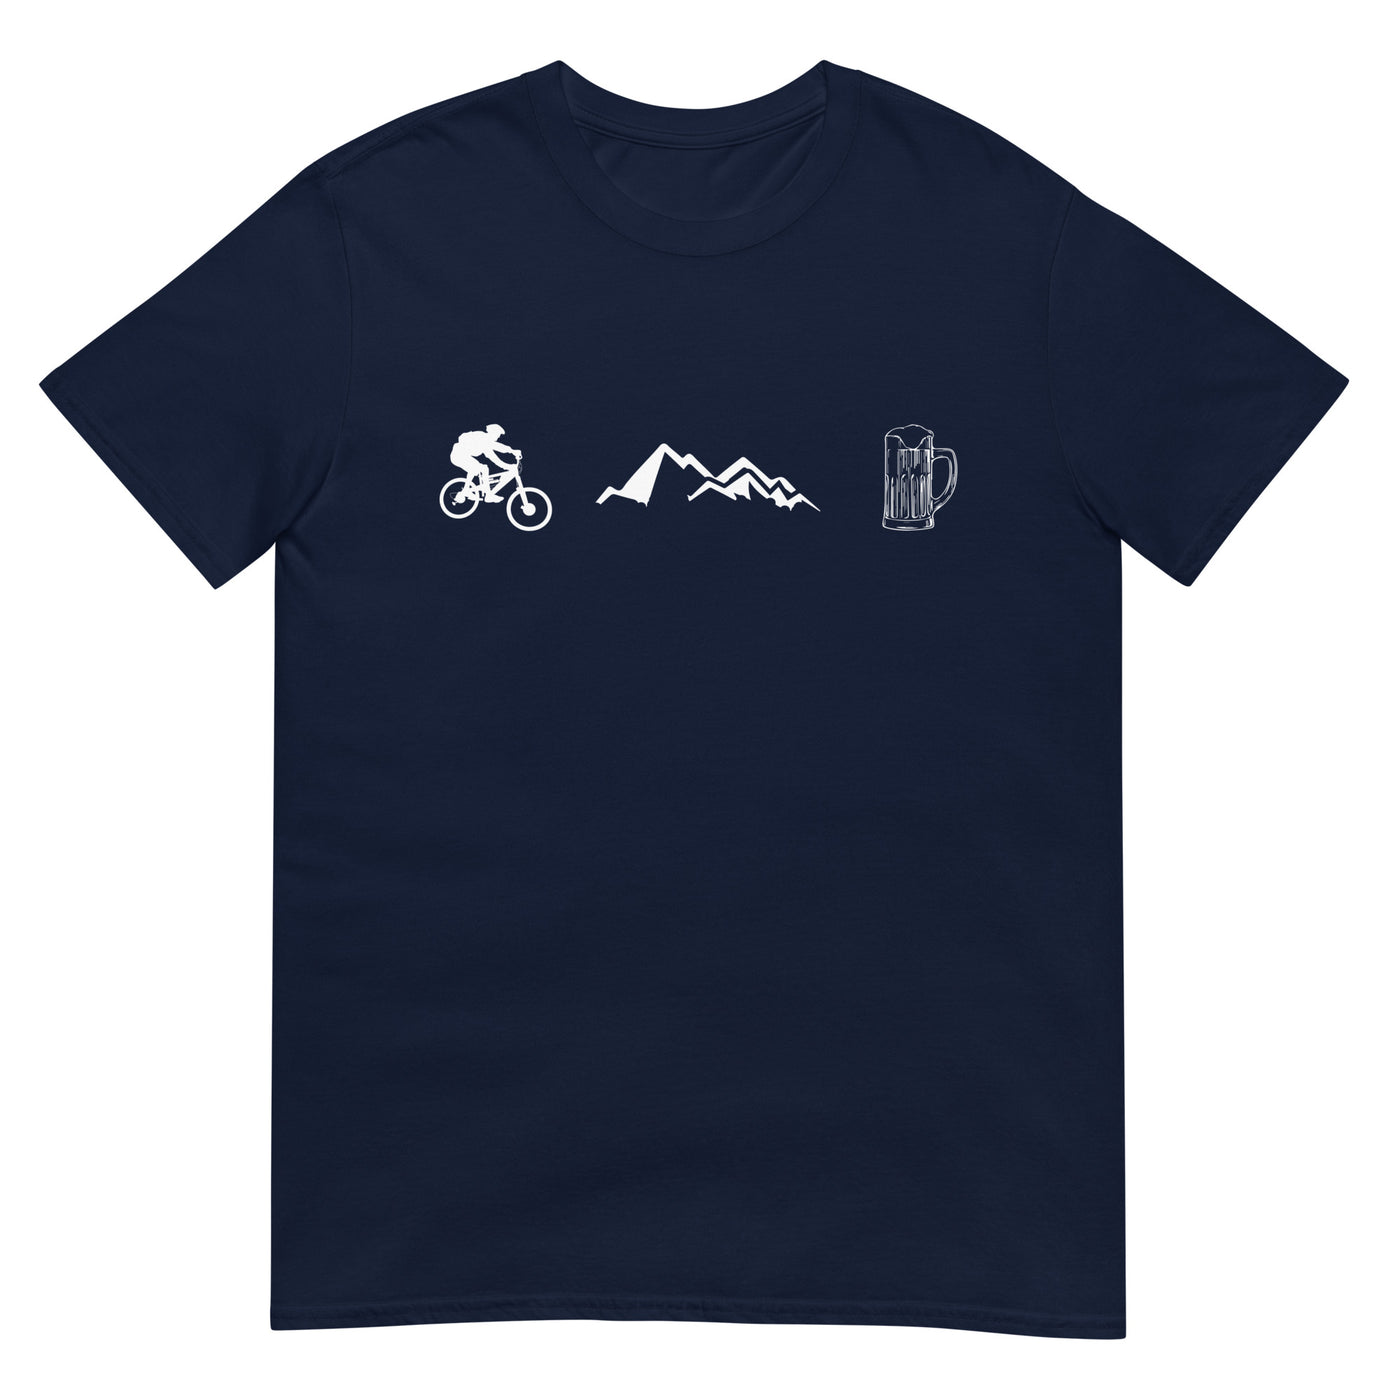 Radfahren, Berge und Bier - T-Shirt (Unisex) fahrrad xxx yyy zzz Navy